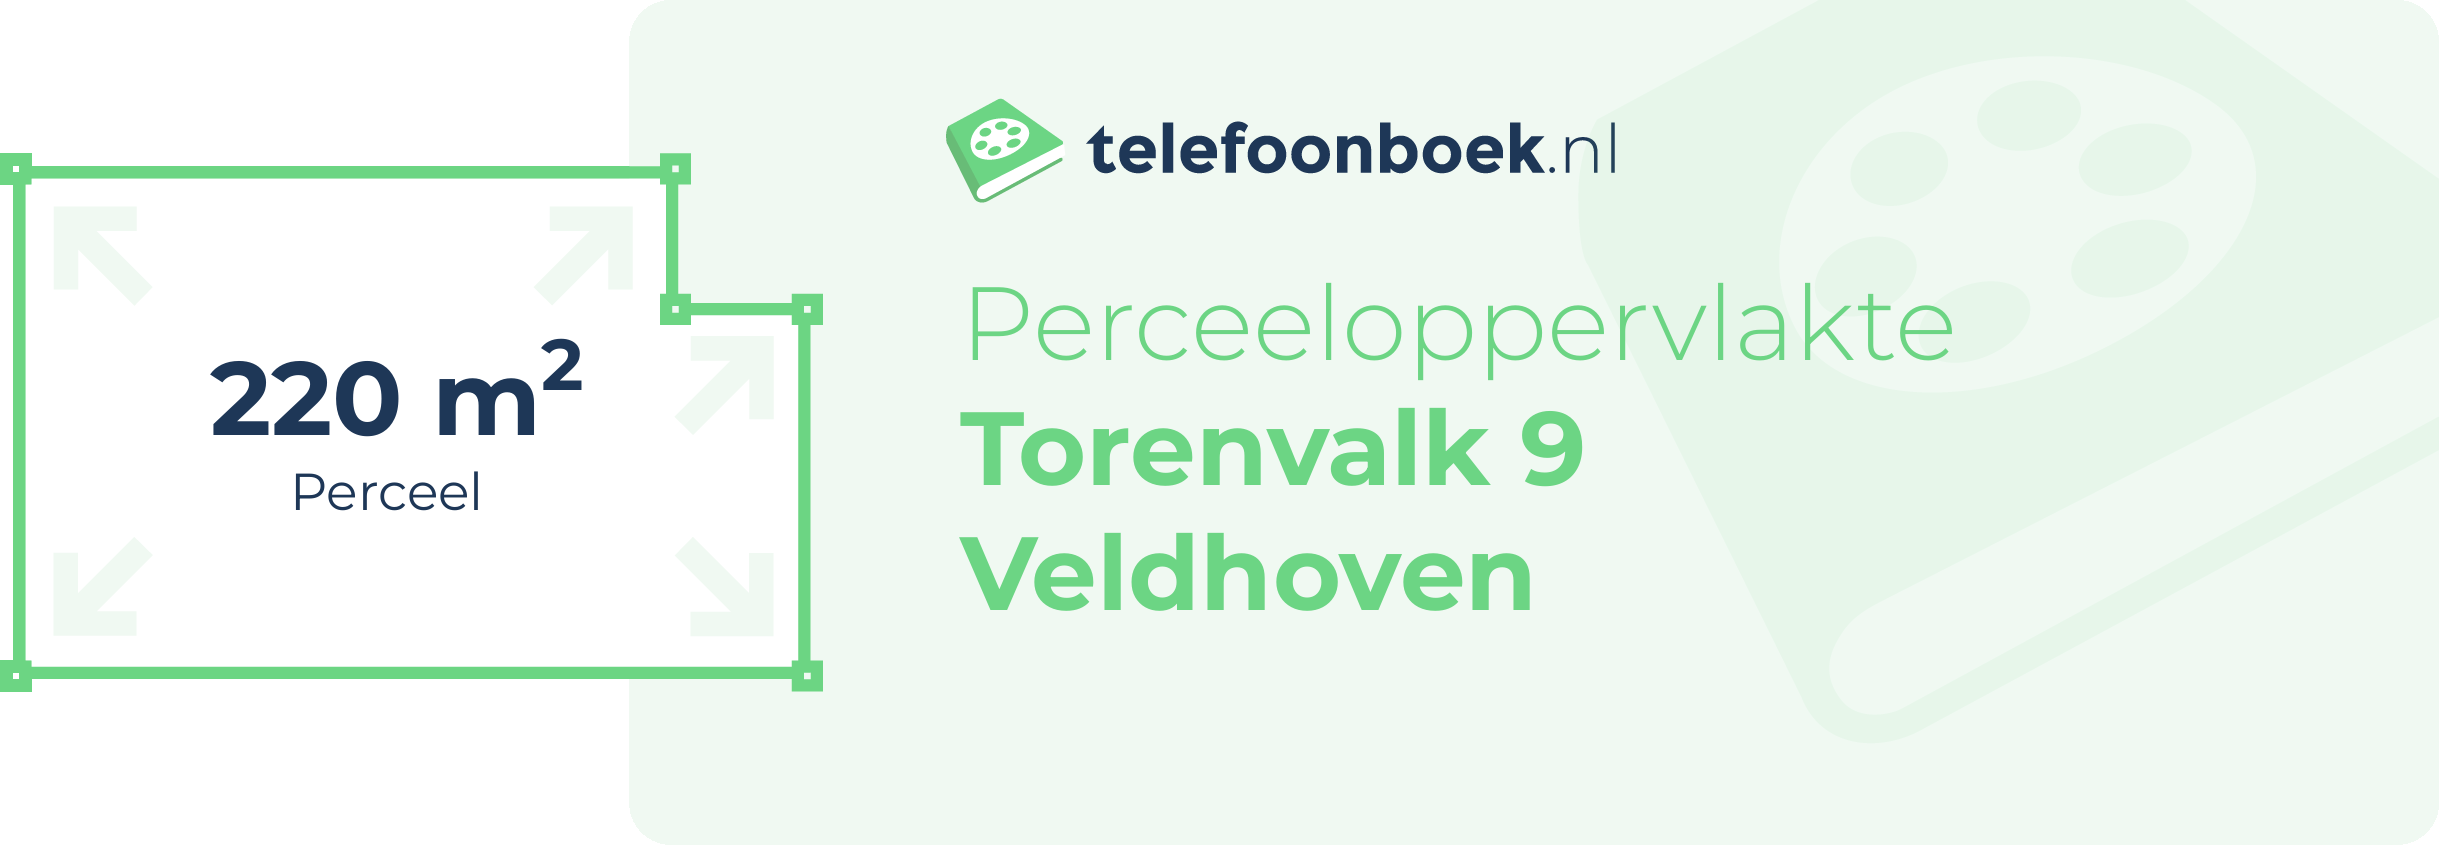 Perceeloppervlakte Torenvalk 9 Veldhoven